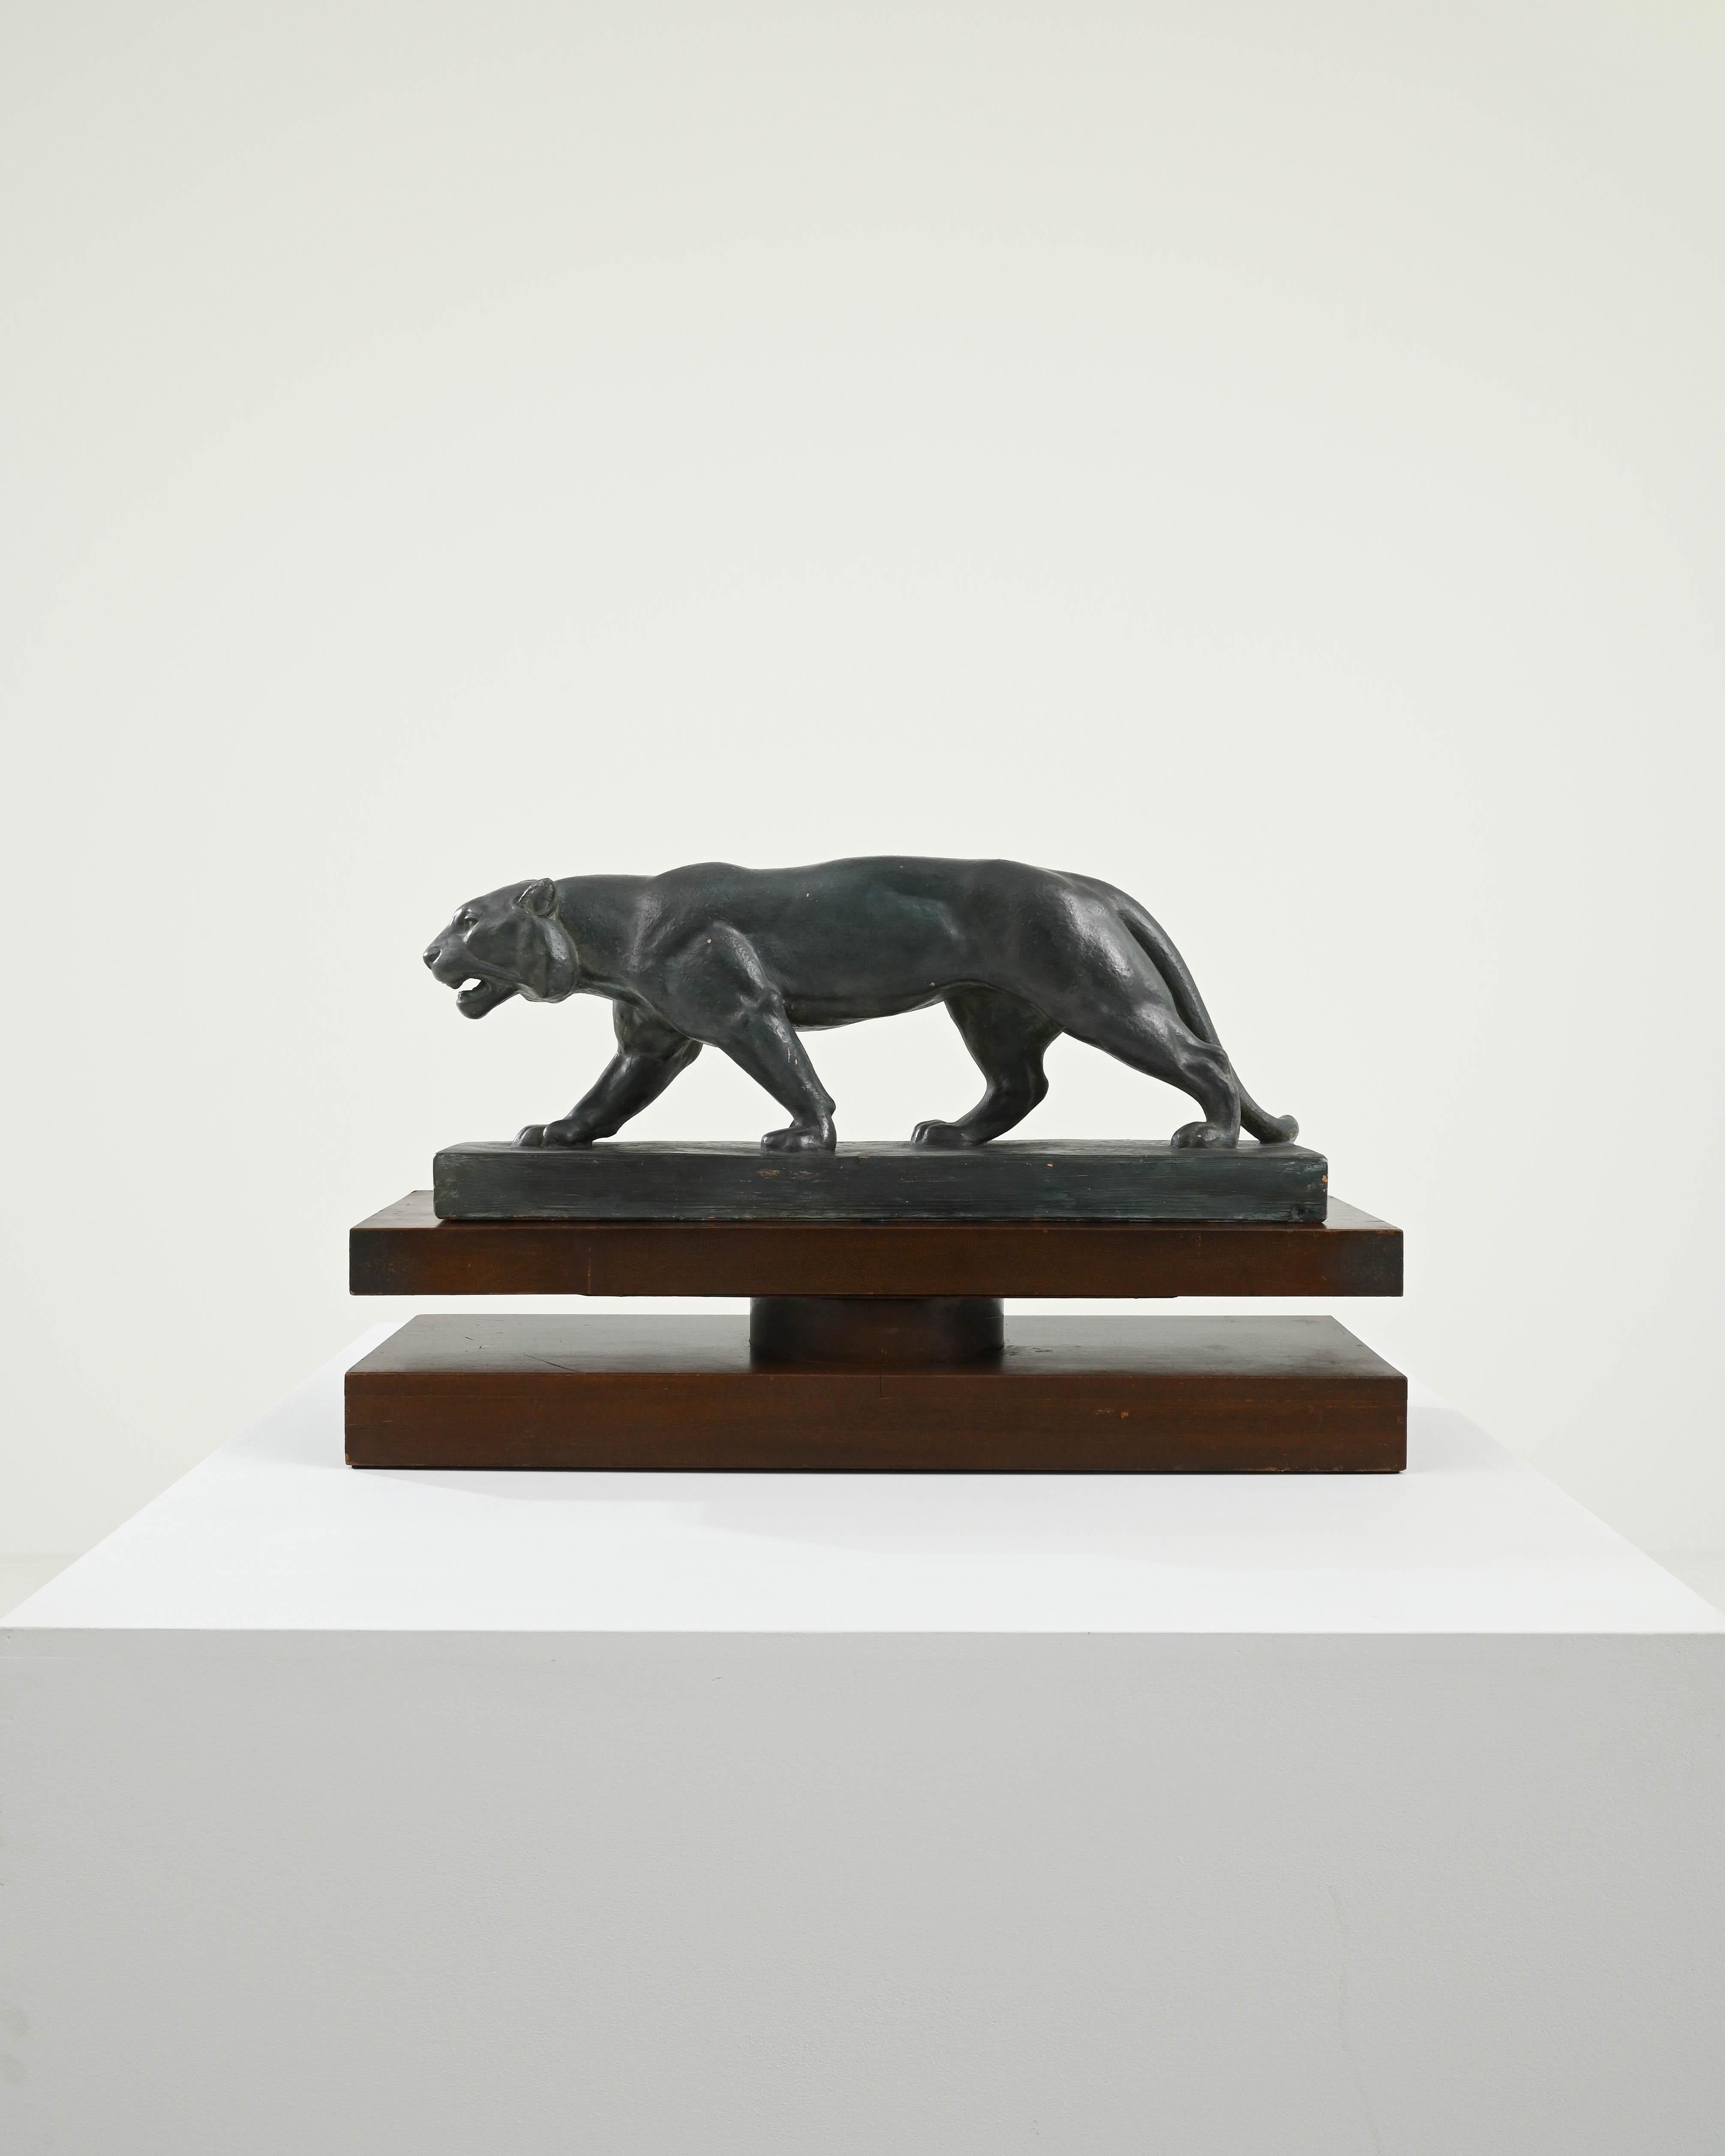 Cette élégante sculpture vintage en plâtre représente un jaguar en mouvement, la tête légèrement baissée, posant un pied devant l'autre avec un équilibre parfait. Construit en France au XXe siècle, son design reflète la fascination du mouvement Art